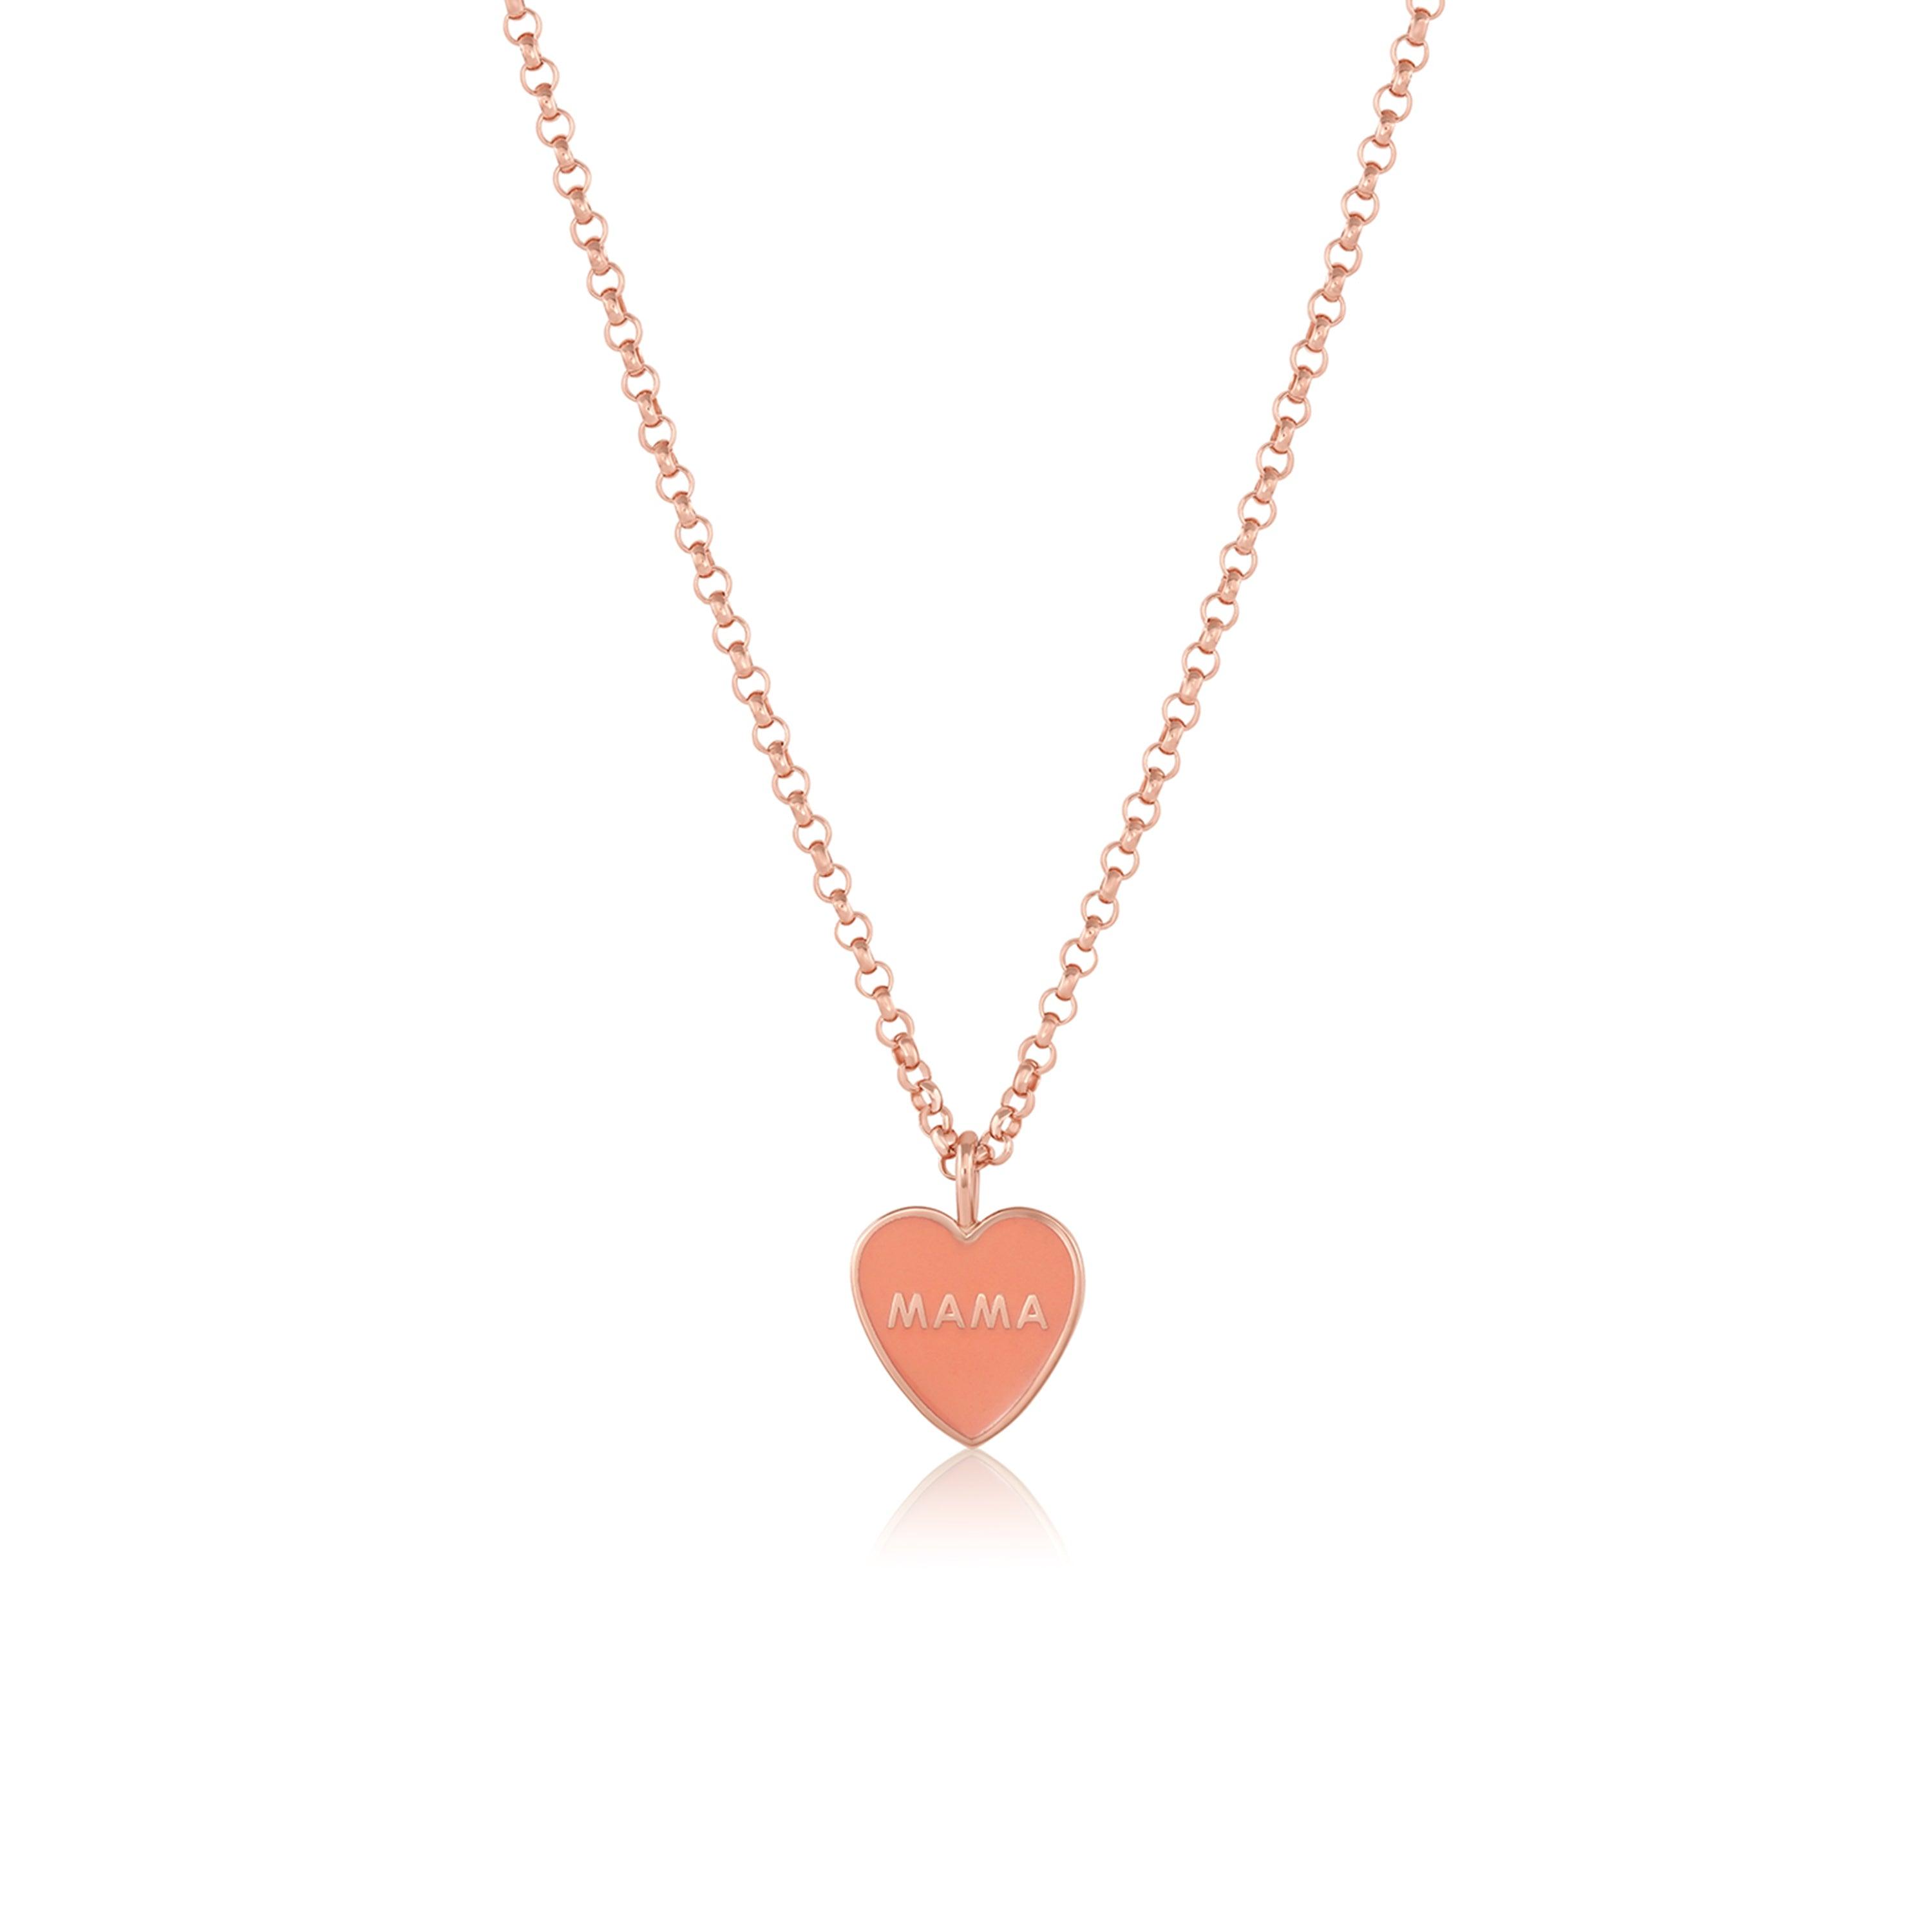 Enamel Heart Pendant | Handmade jewellery by Lora Wyn | Adra